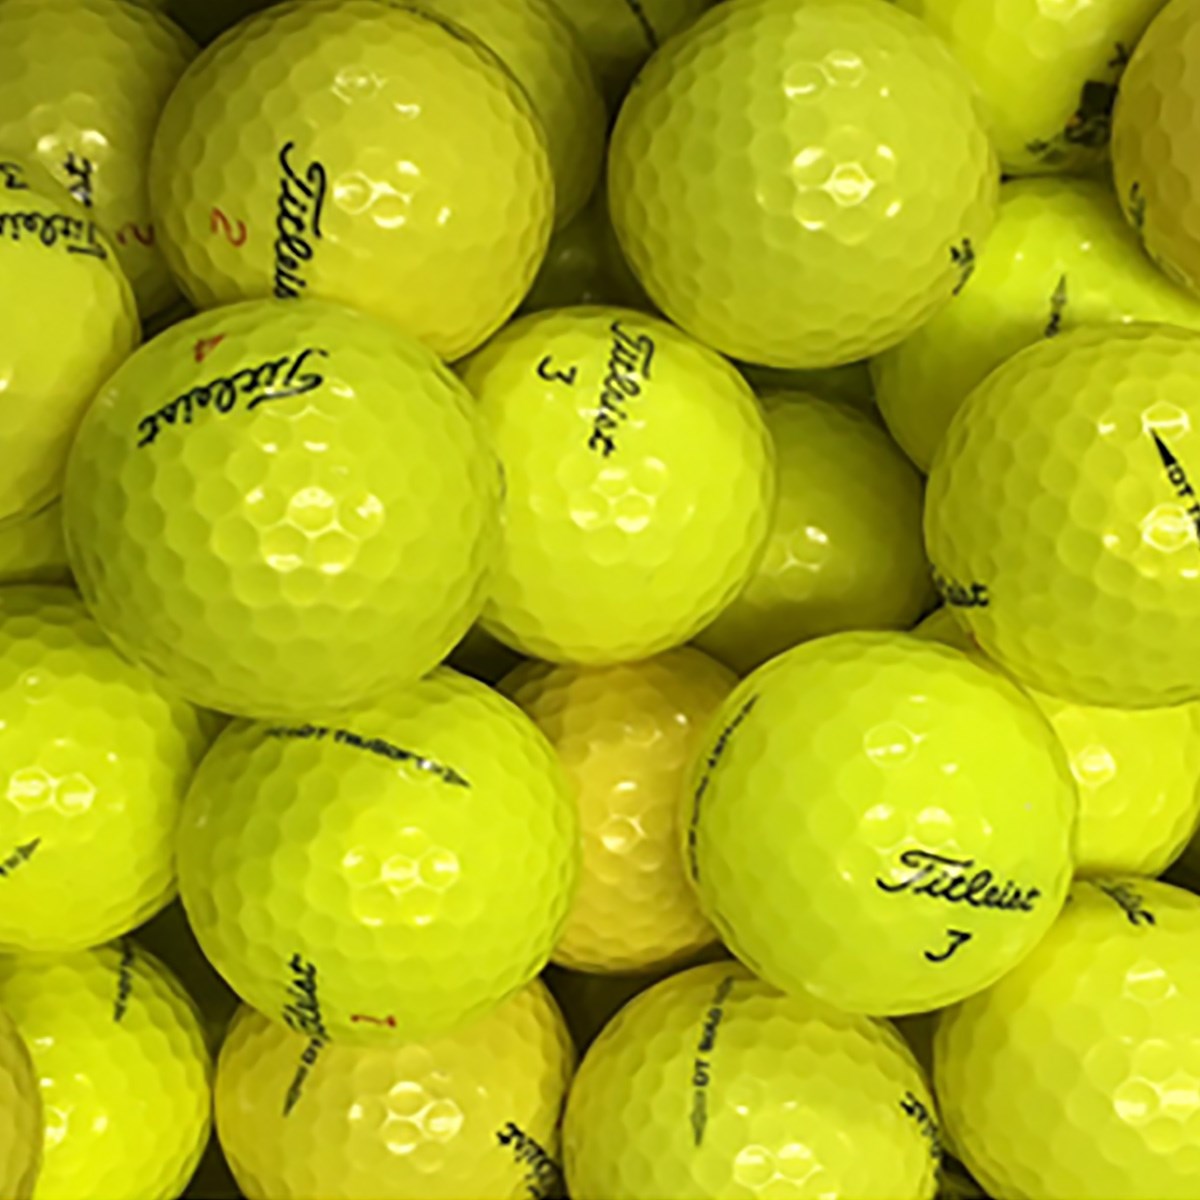 ロストボール タイトリスト混合 Sランク イエロー系 20個セット ゴルフの大画像